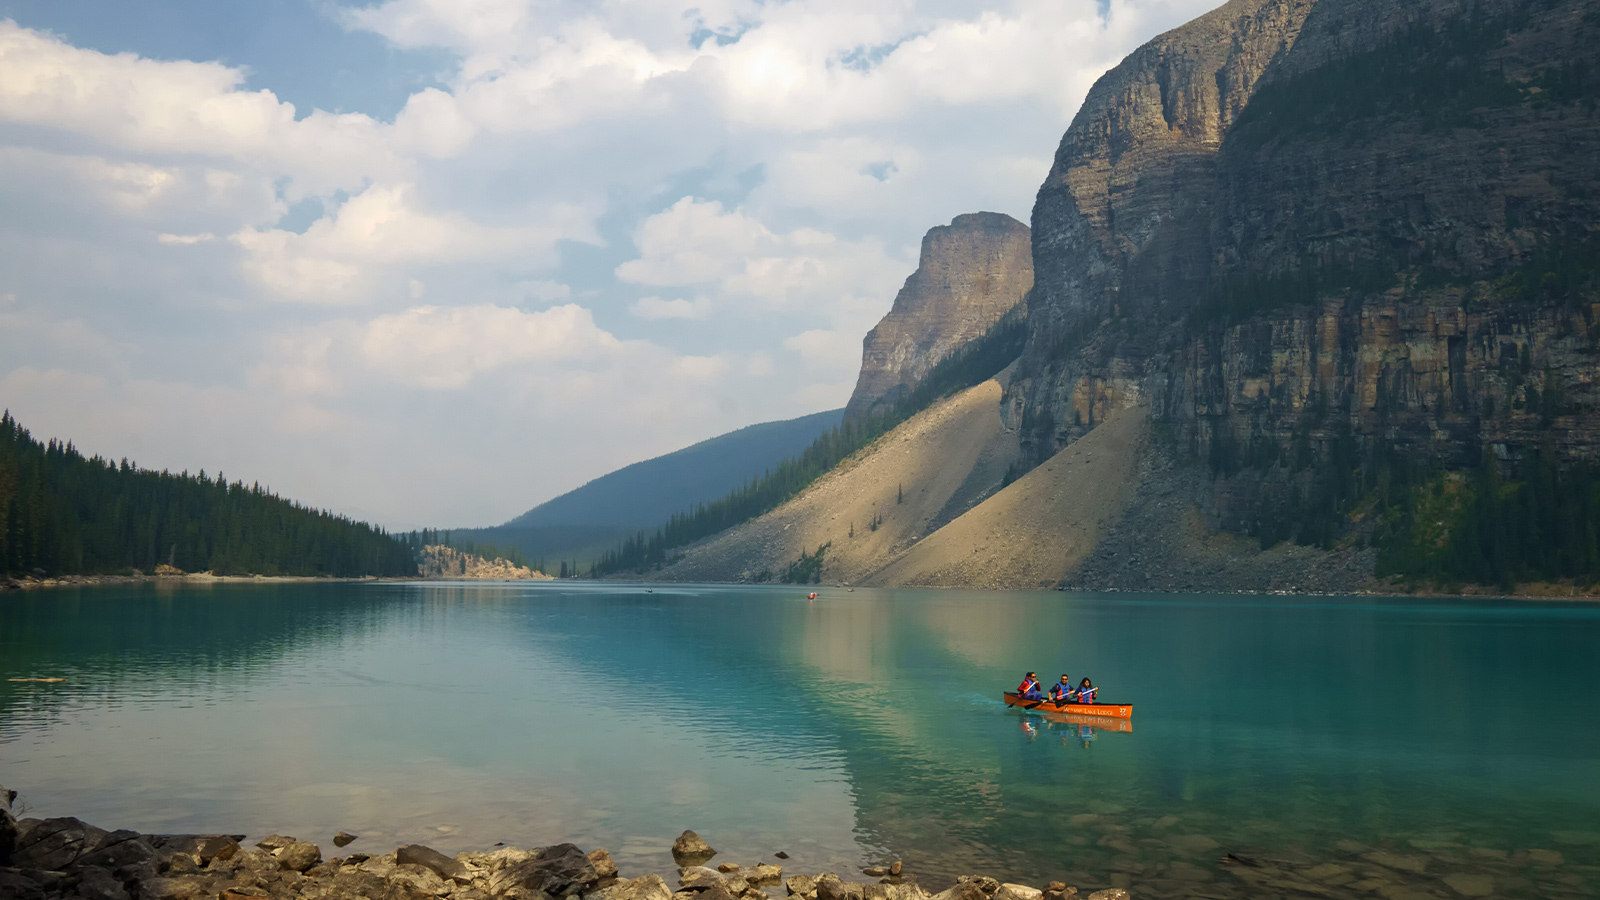 People kayaking on a mountain lake